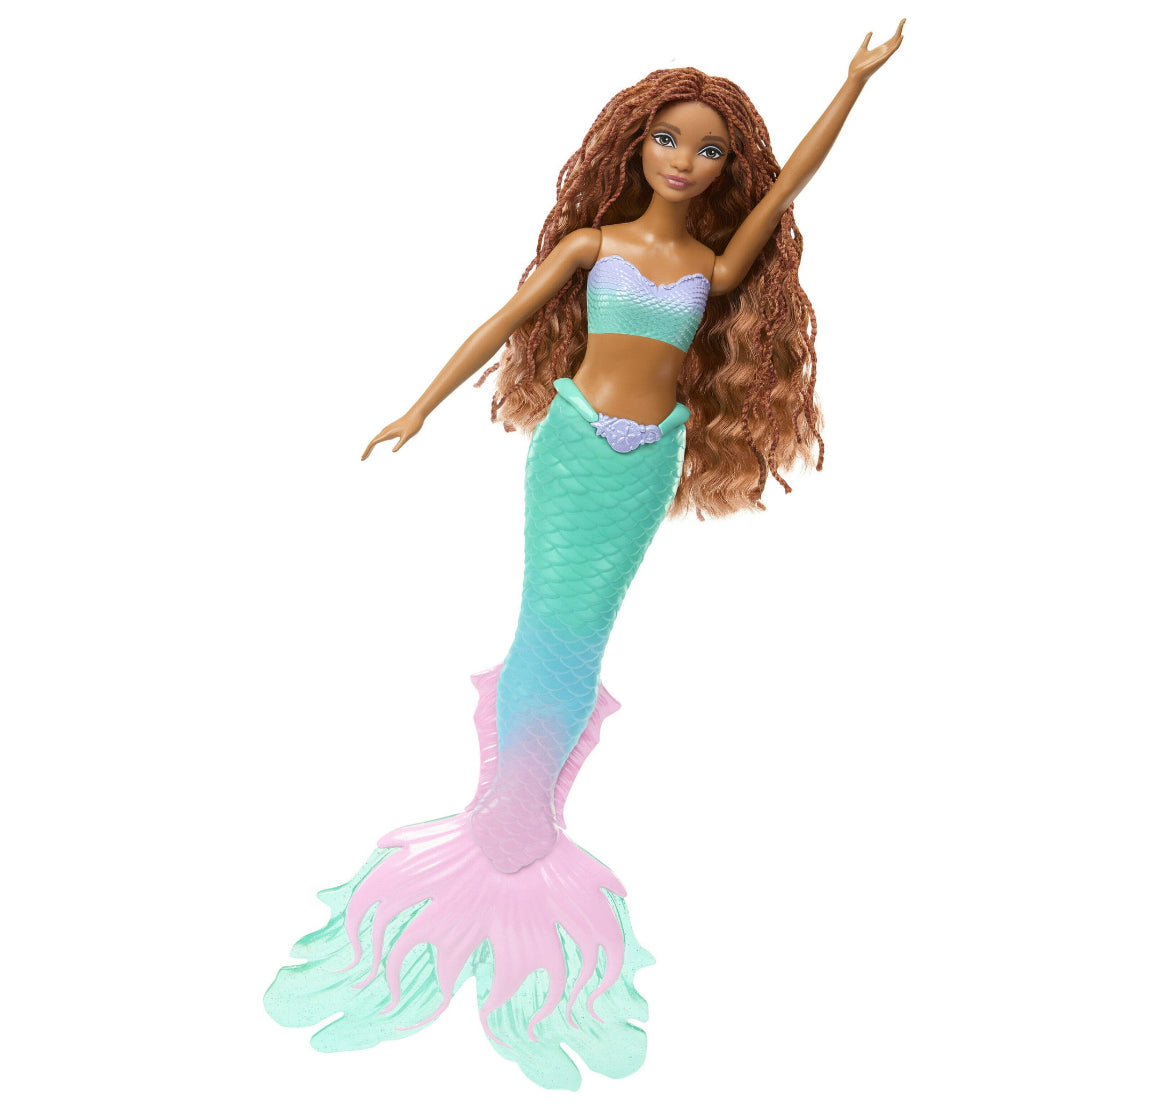 Disney The Little Mermaid Sing & Dream Ariel Fashion Doll